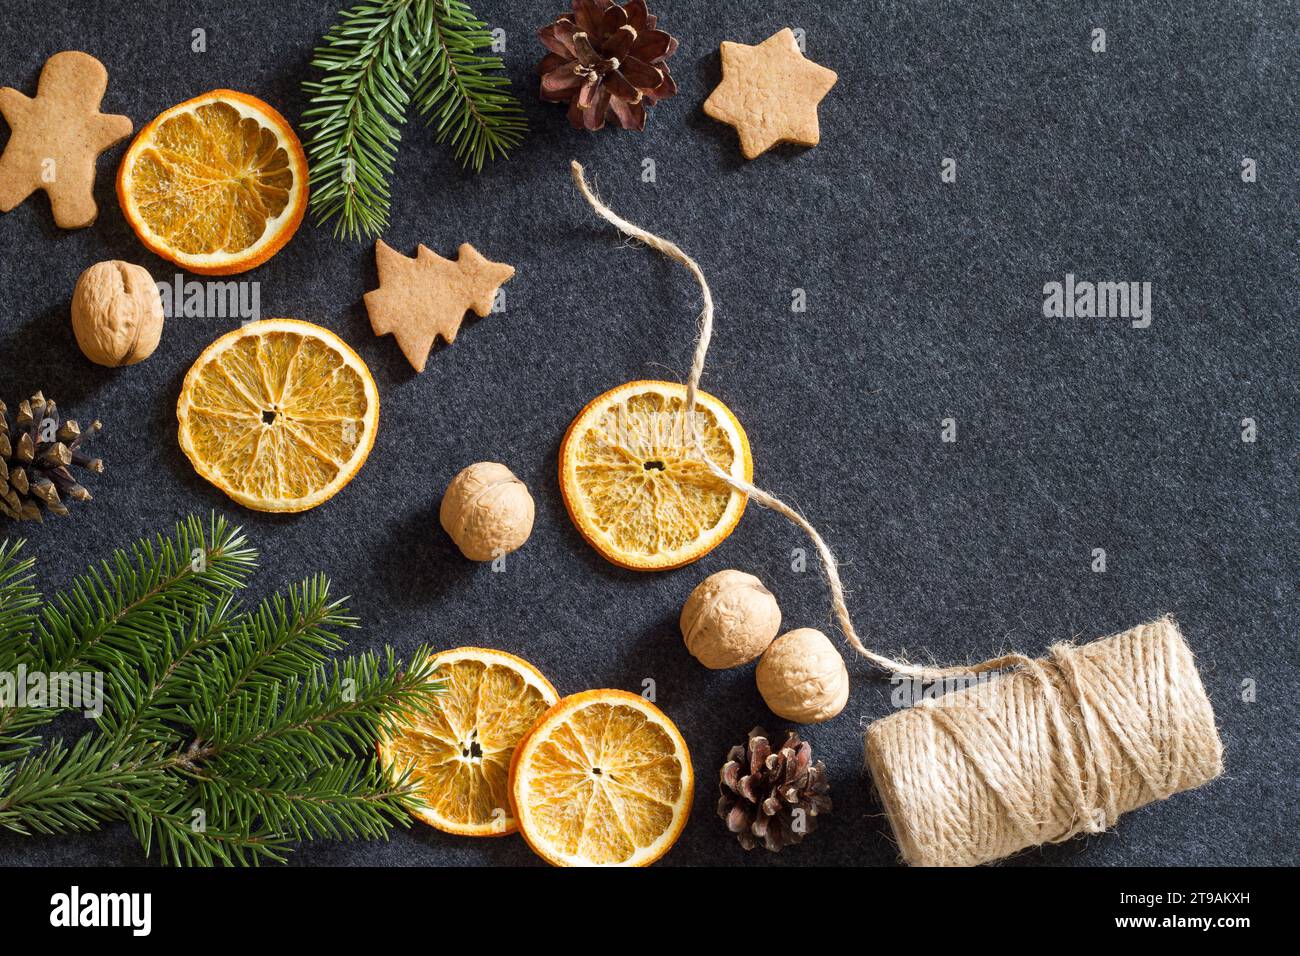 Sfondo natalizio, arancia secca, coni, noci e biscotti, decorazioni naturali per l'albero di natale Foto Stock